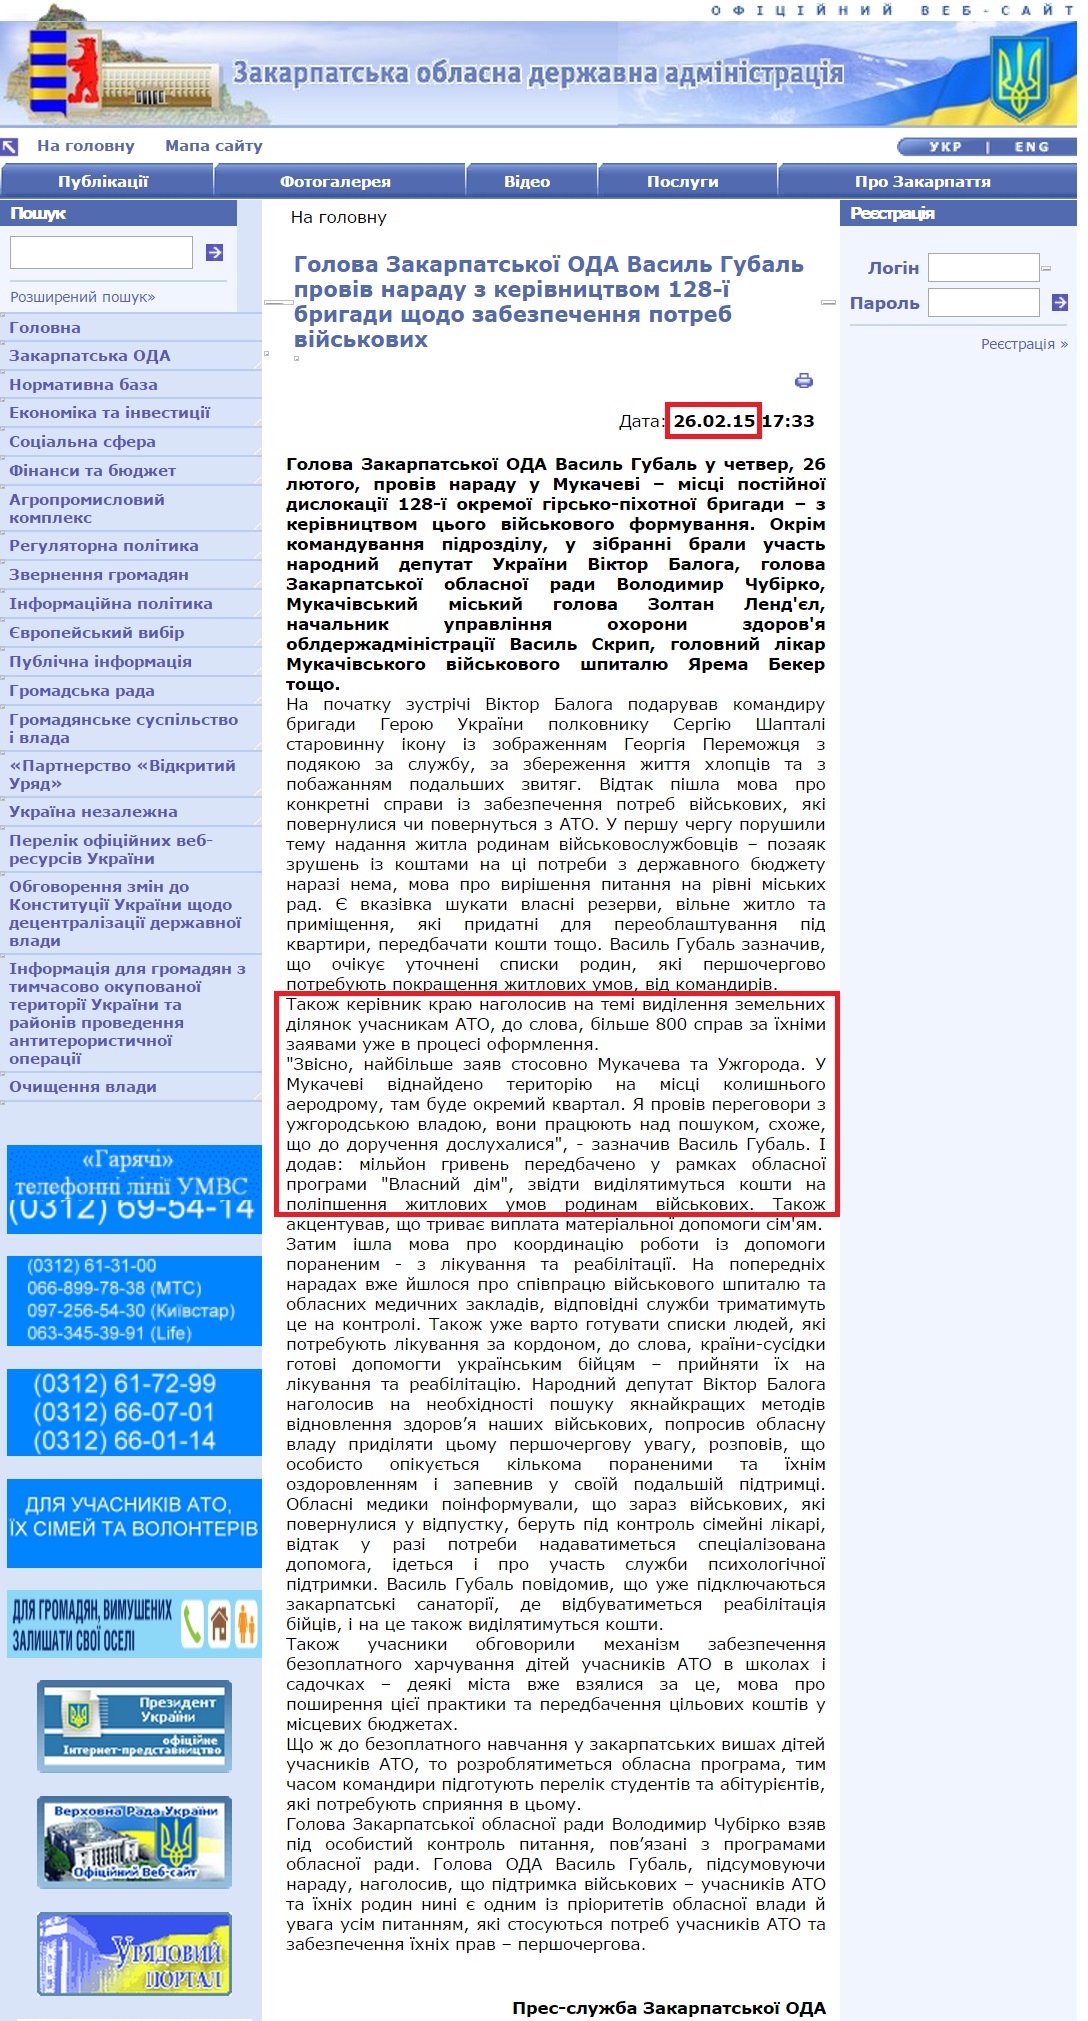 http://www.carpathia.gov.ua/ua/publication/content/10817.htm